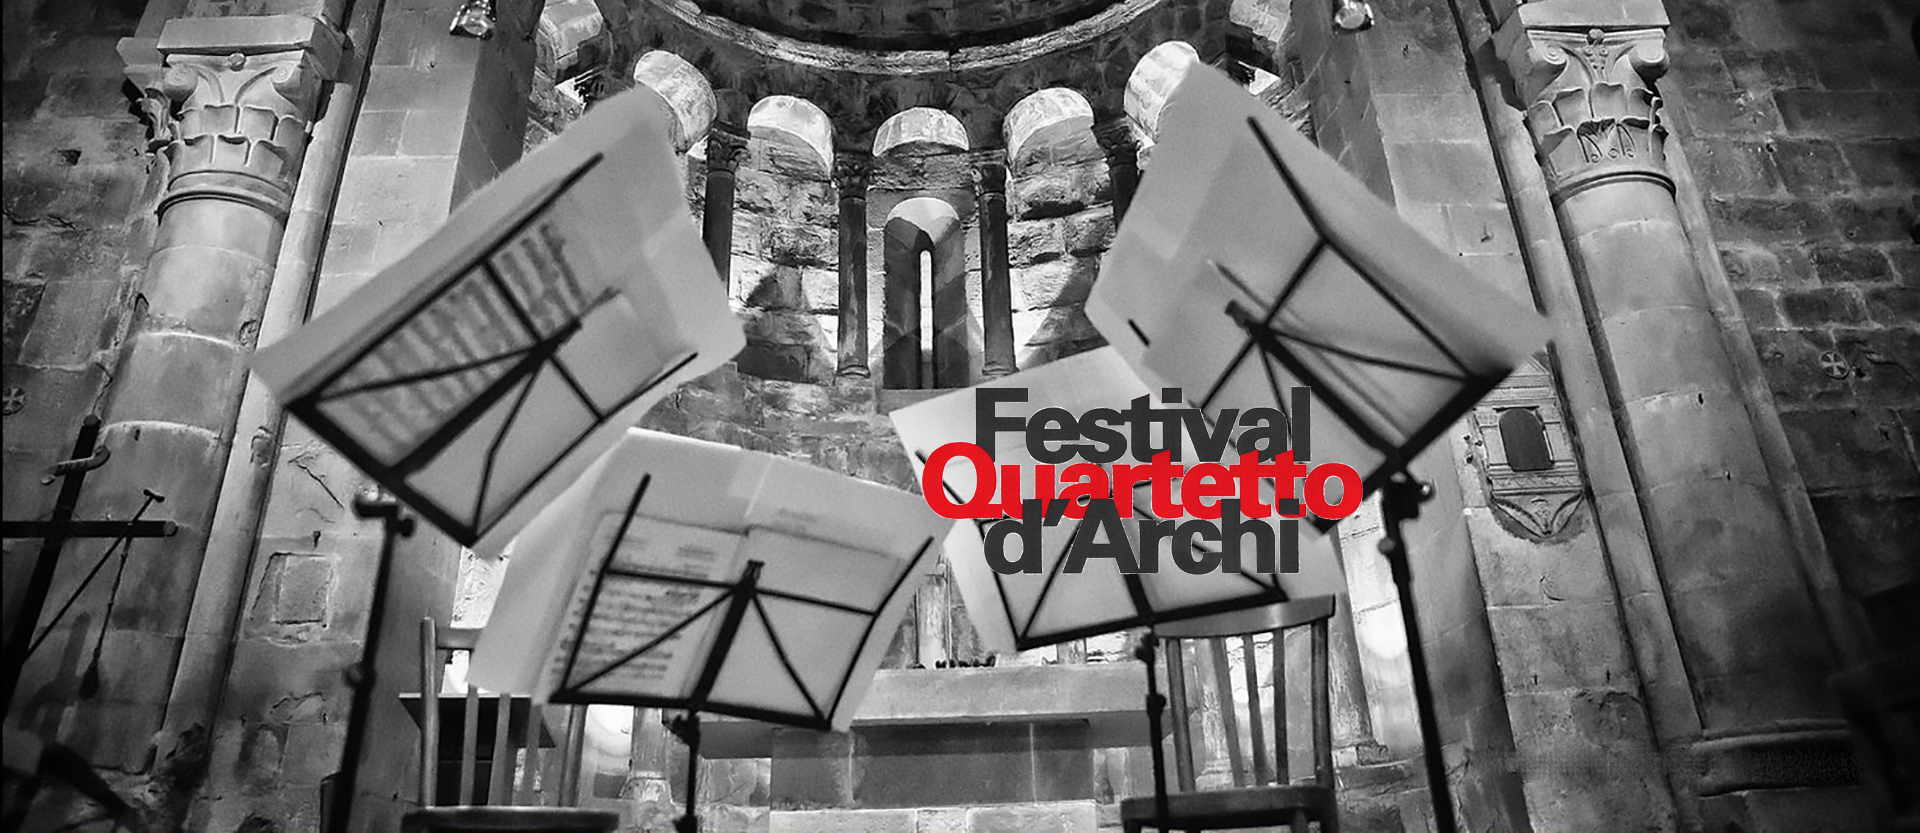 Programma del 22° Festival del Quartetto d’Archi alla Pieve di Gropina